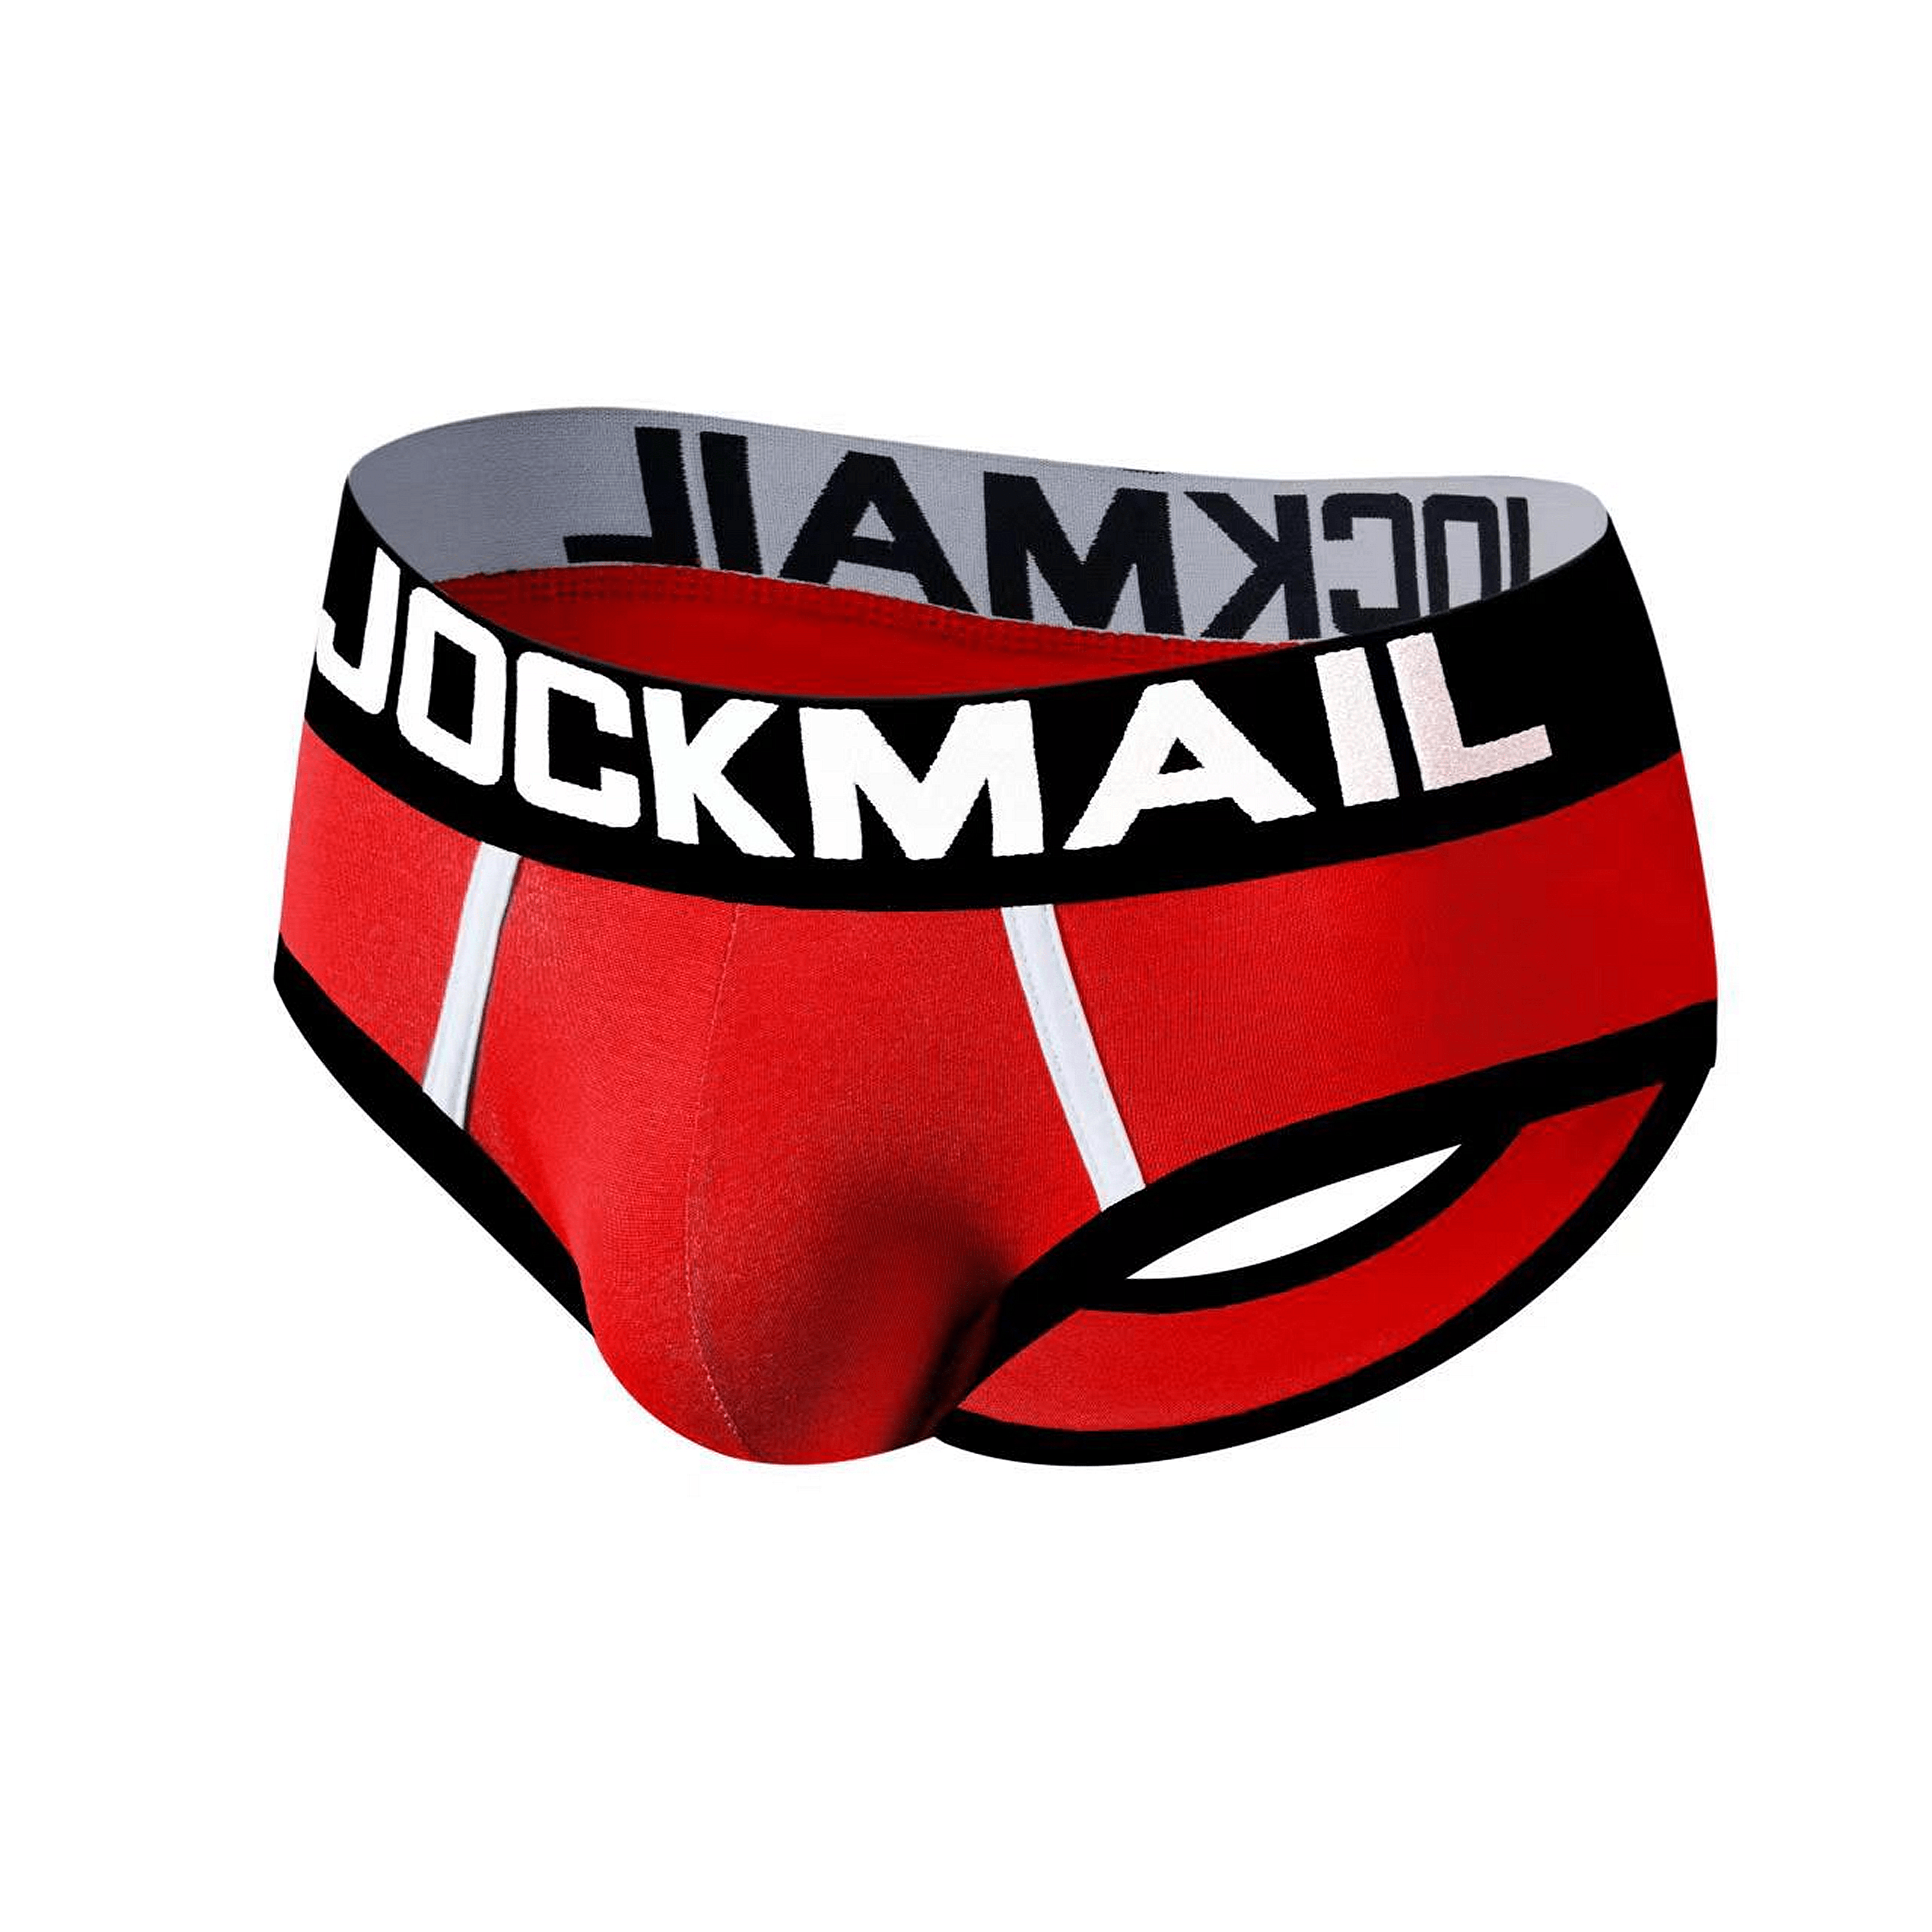 Jockmail Men Open Back Underwear Men Underwear Brief Cotton